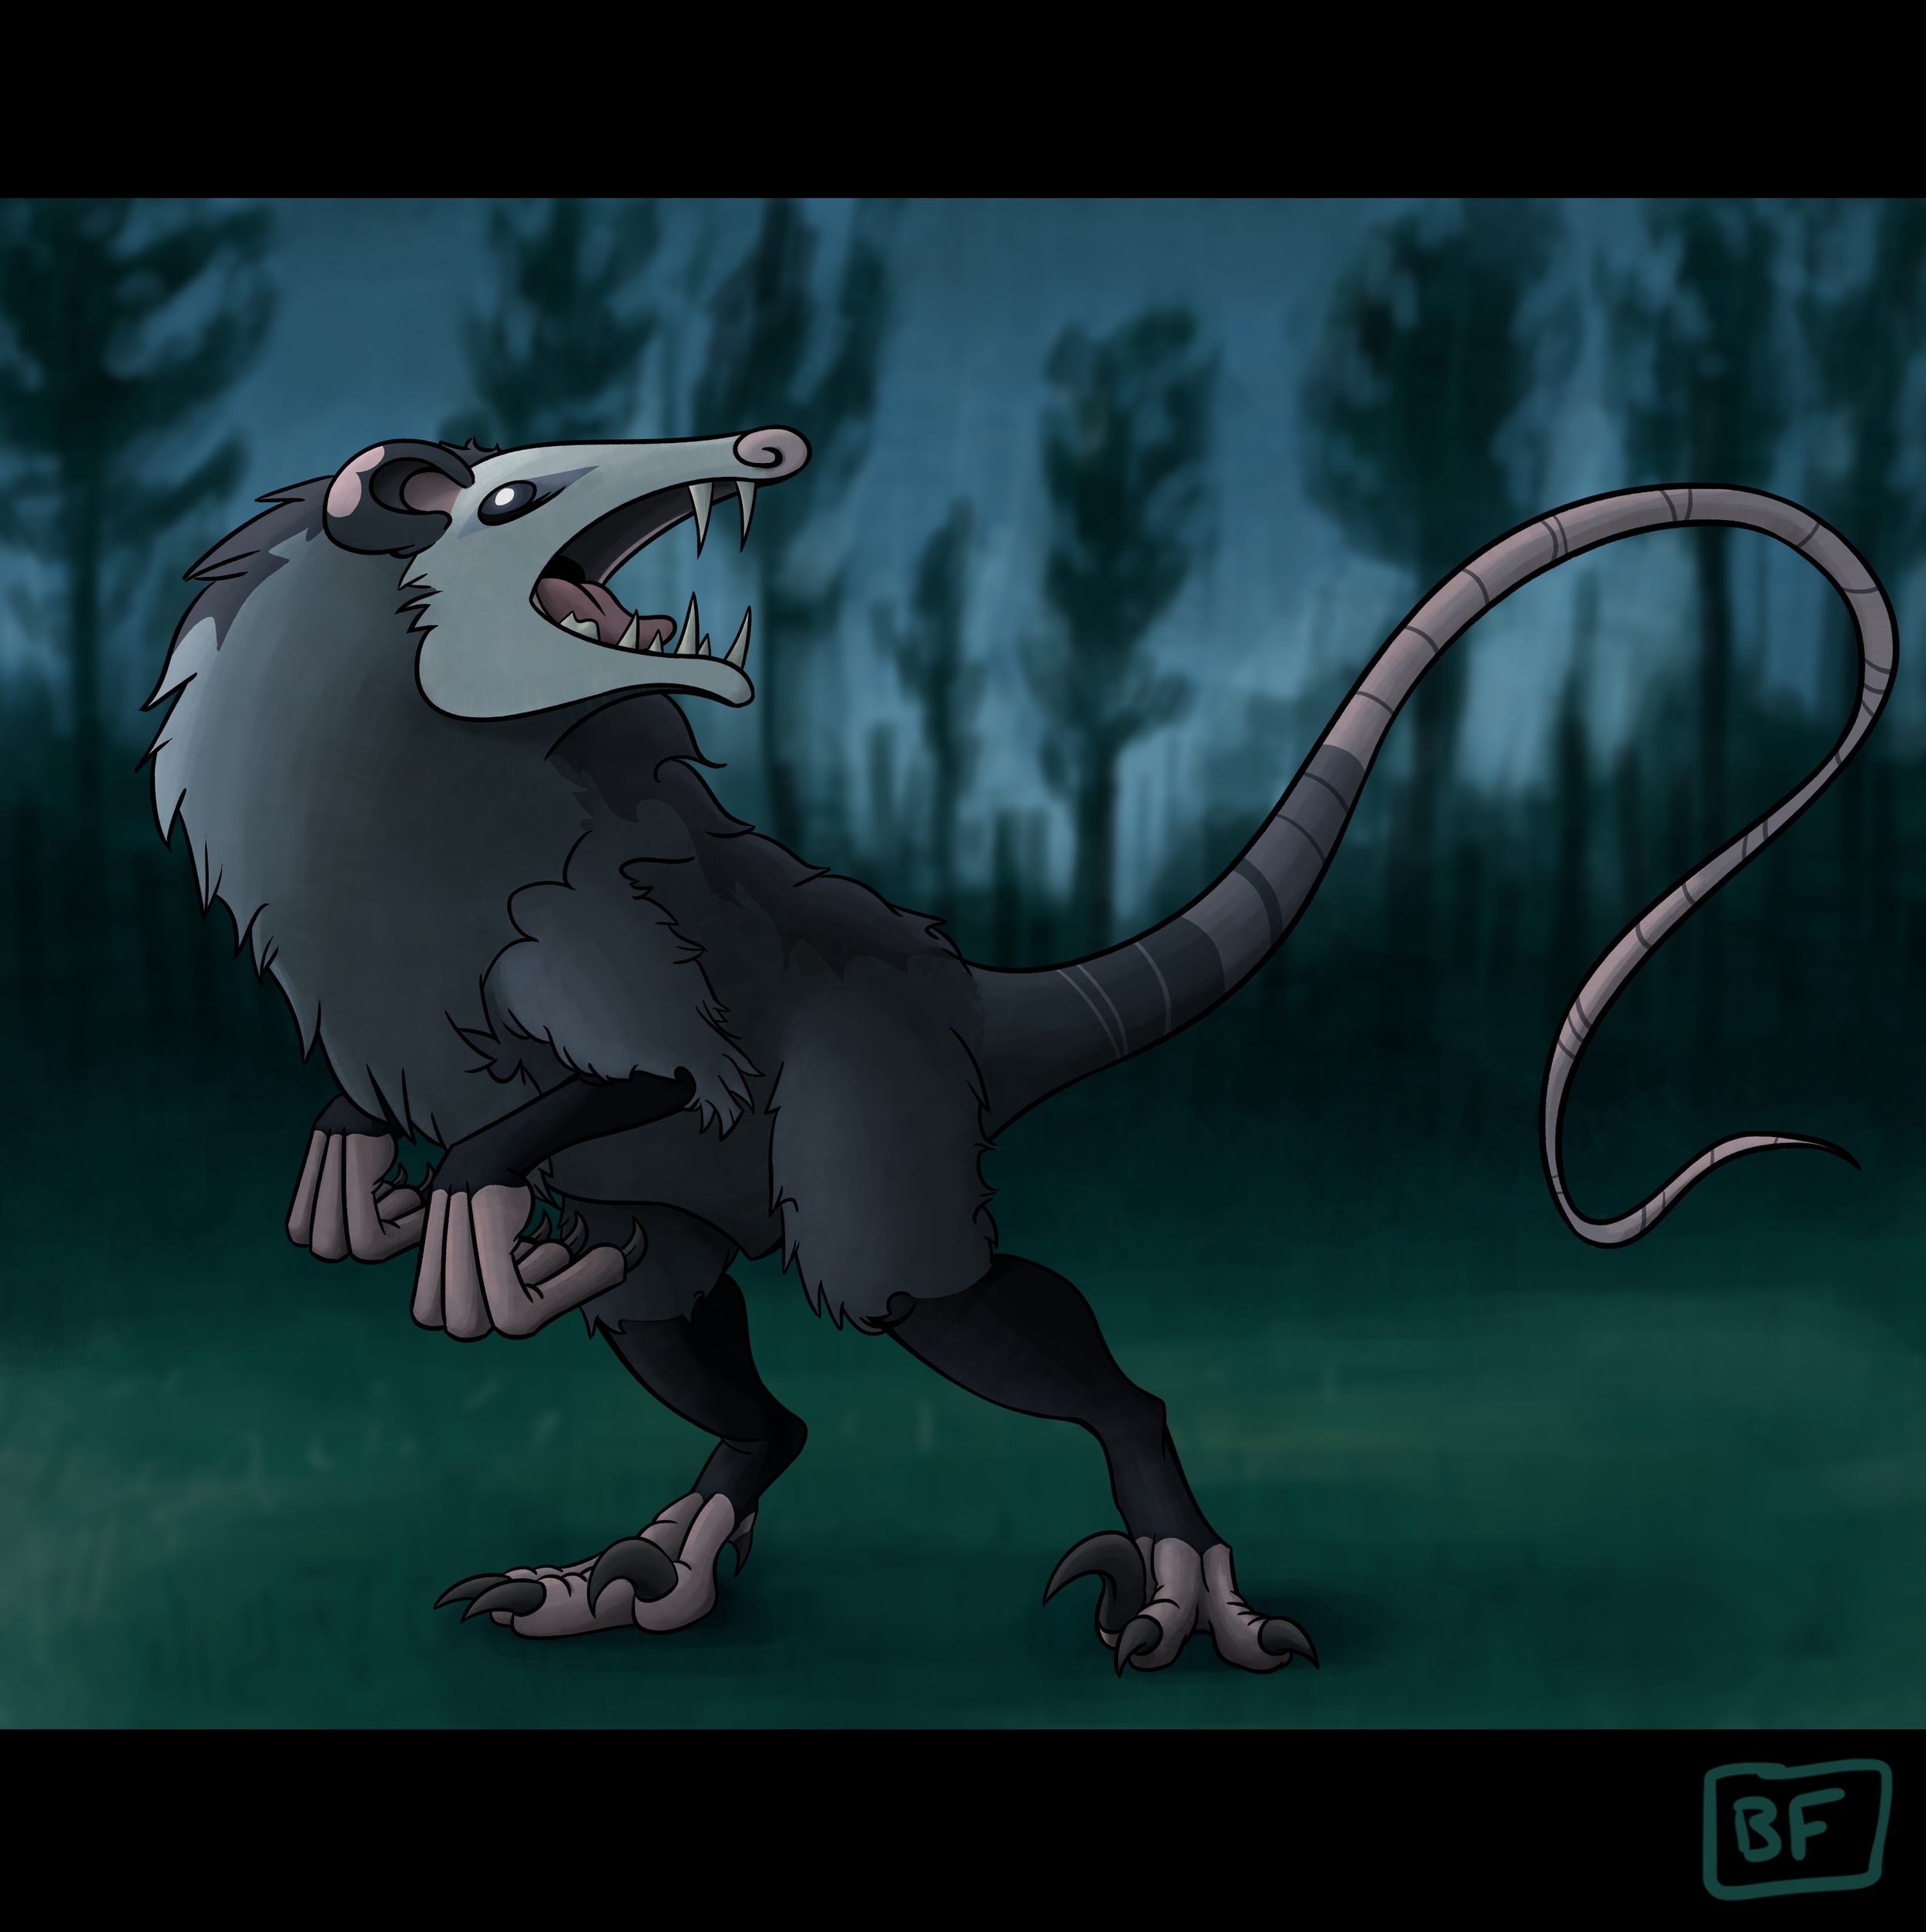 1. Opossumsaurus